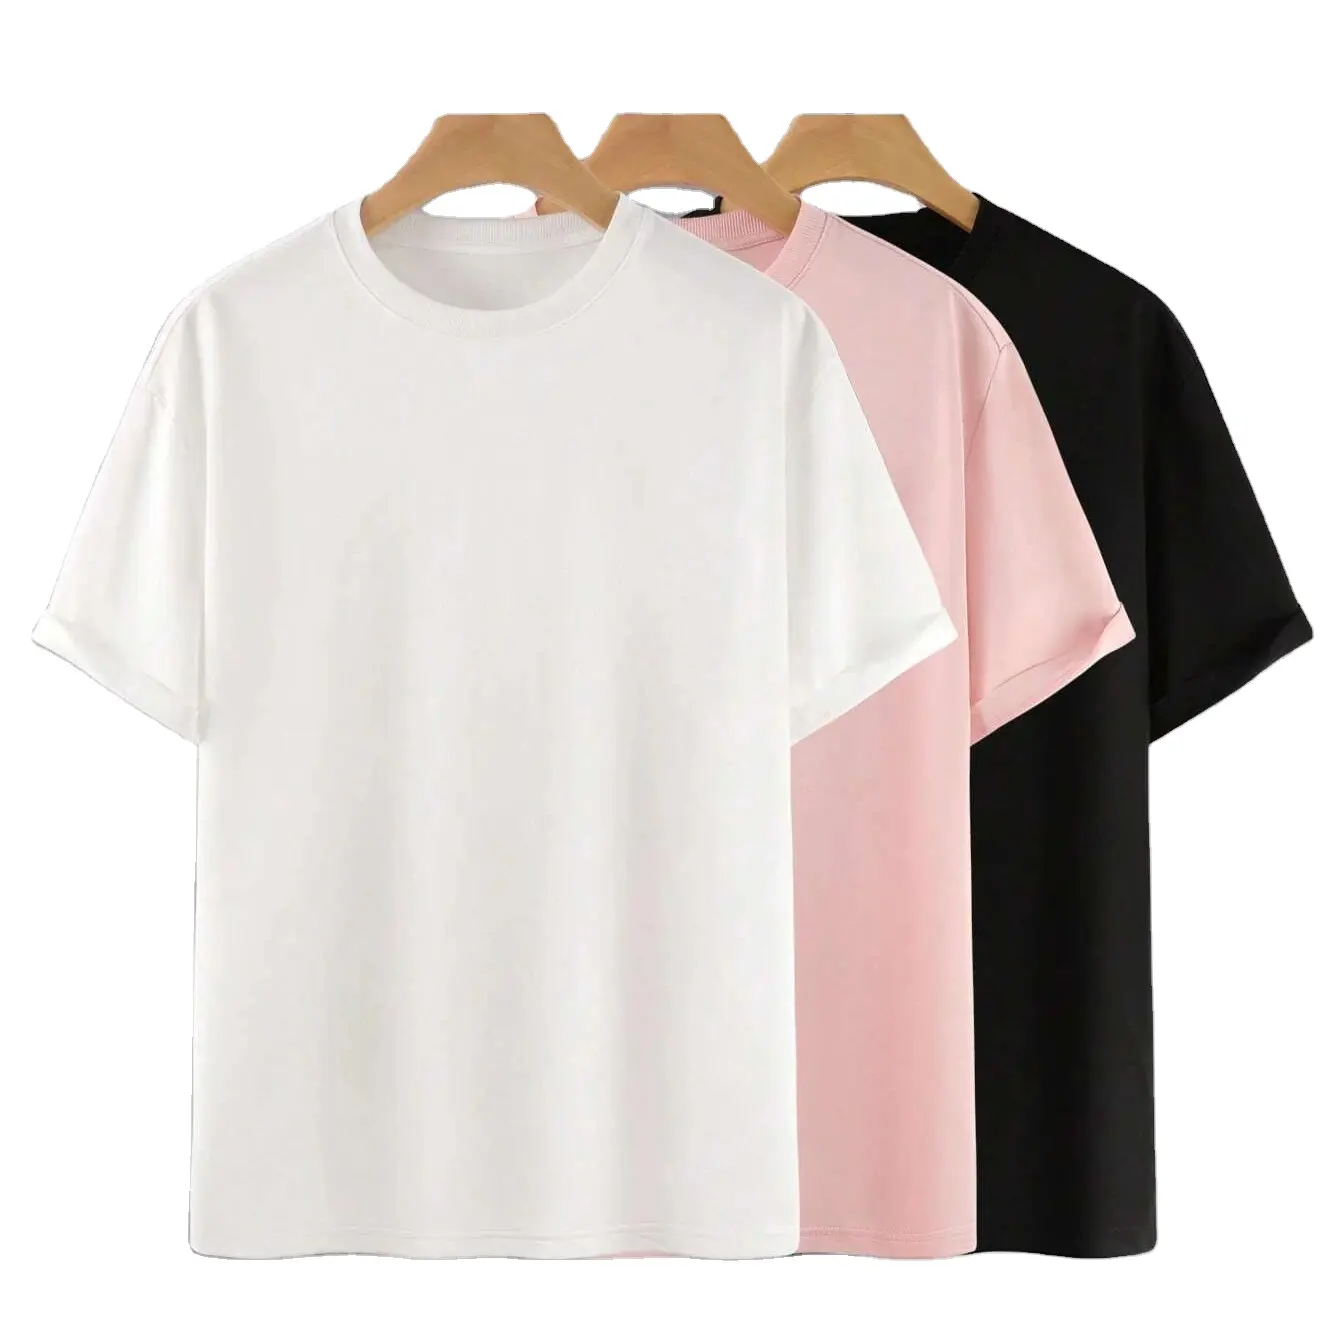 남자 3 개 솔리드 라운드 넥 티셔츠 최고 품질 슬림 핏 티셔츠/최고 품질 남성 티셔츠 단색 캐주얼 의류